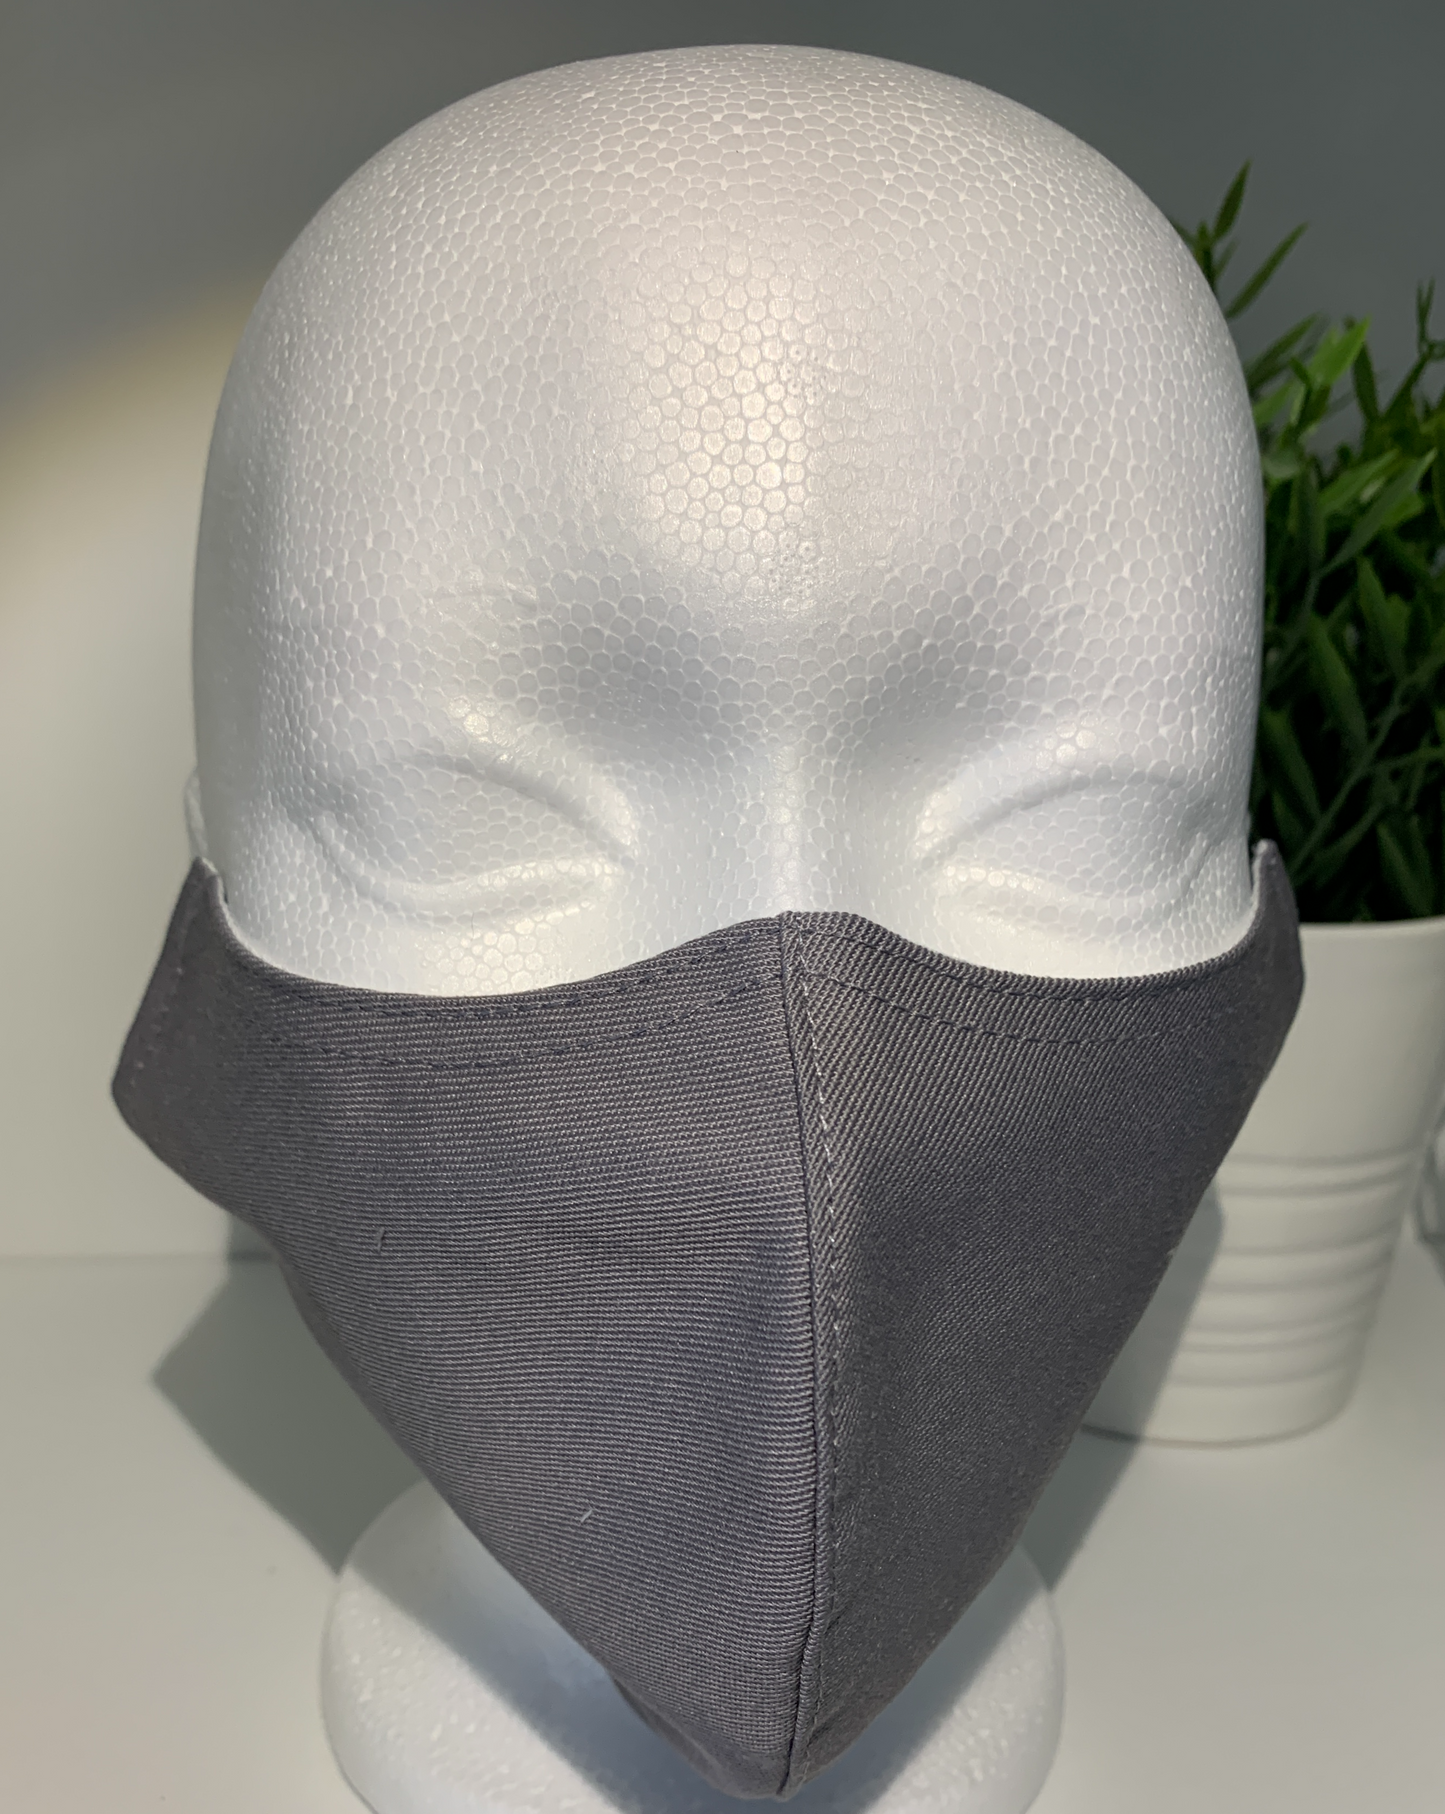 Reusable Poly/Cotton Face Mask